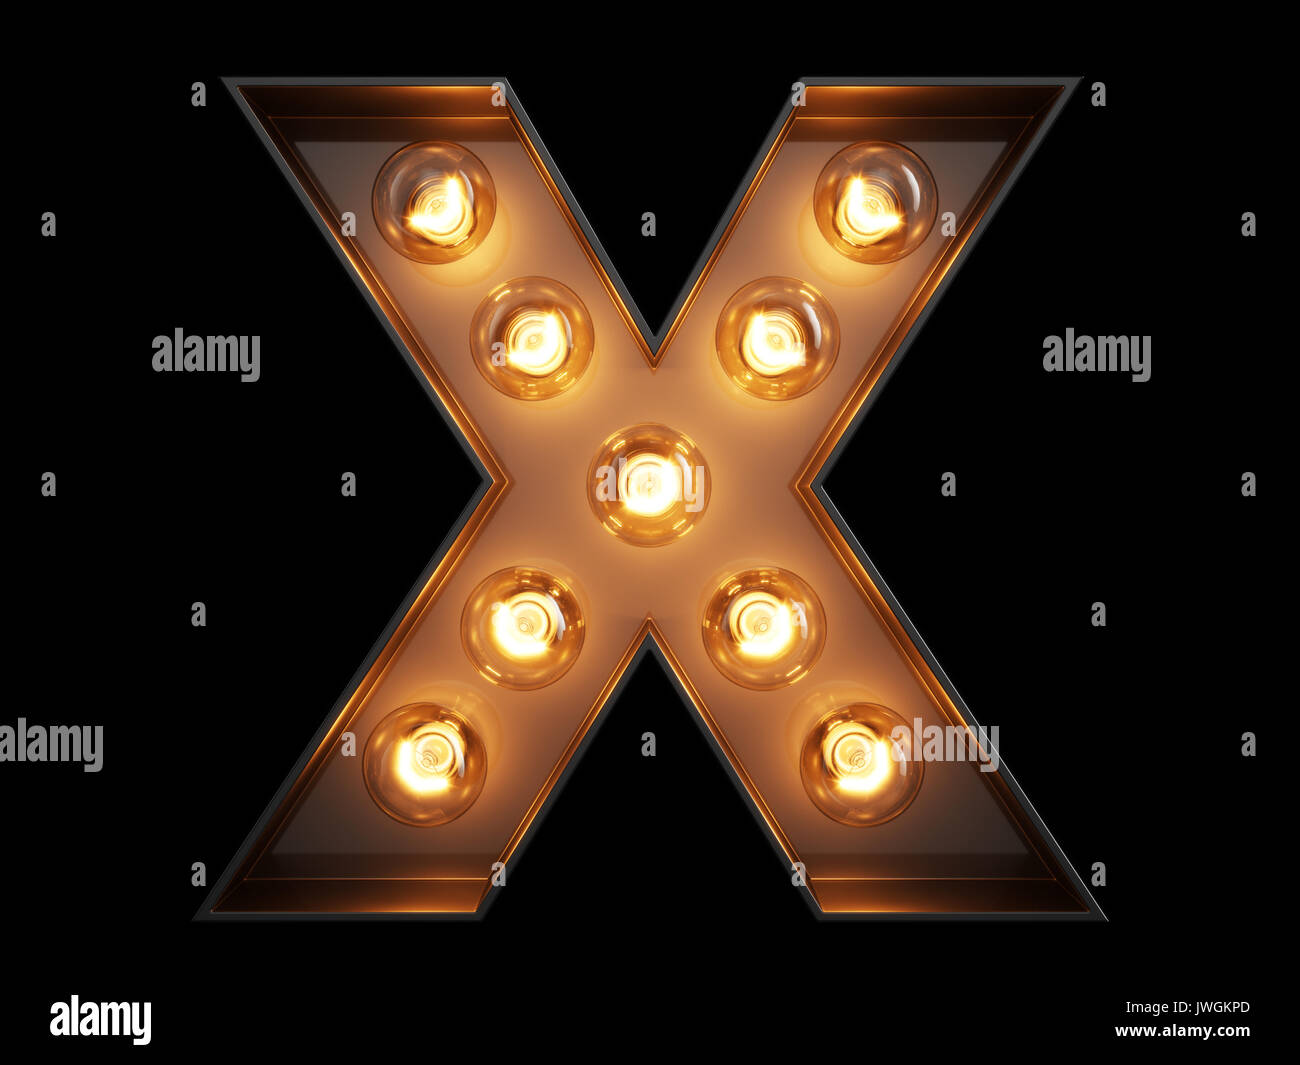 Glowing X Letter - những hình ảnh rực rỡ với chữ X phát sáng đầy mê hoặc. Với nền tối và những đường viền siêu nét, bạn sẽ có những trải nghiệm thị giác đầy ấn tượng.